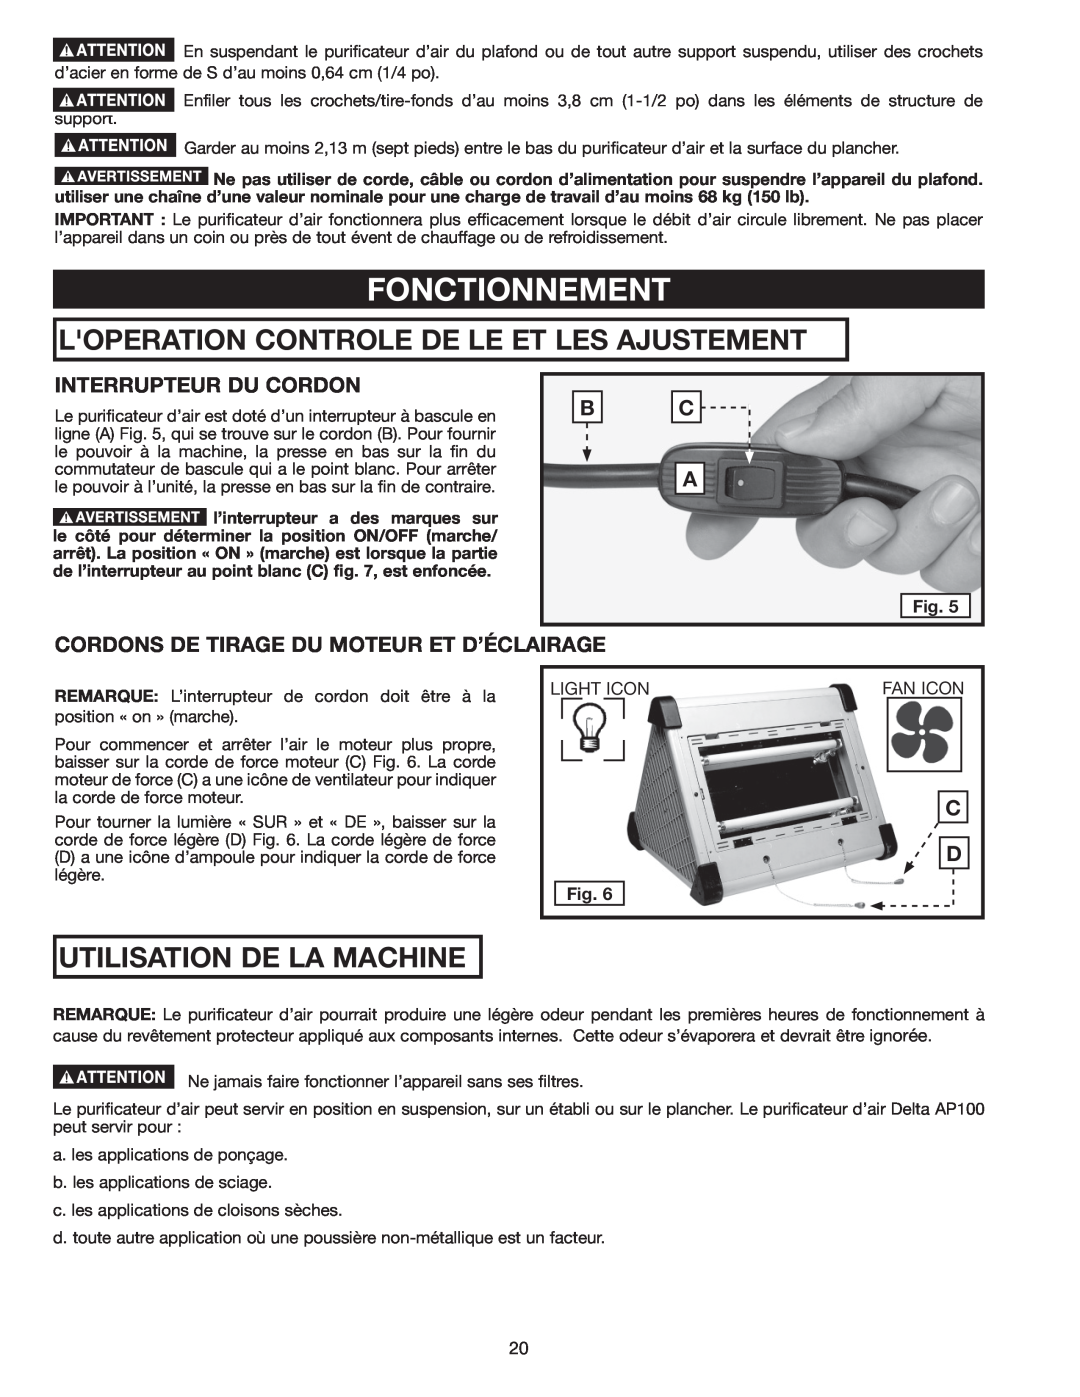 Delta AP-100 instruction manual Fonctionnement, Loperation Controle De Le Et Les Ajustements, Utilisation De La Machine 